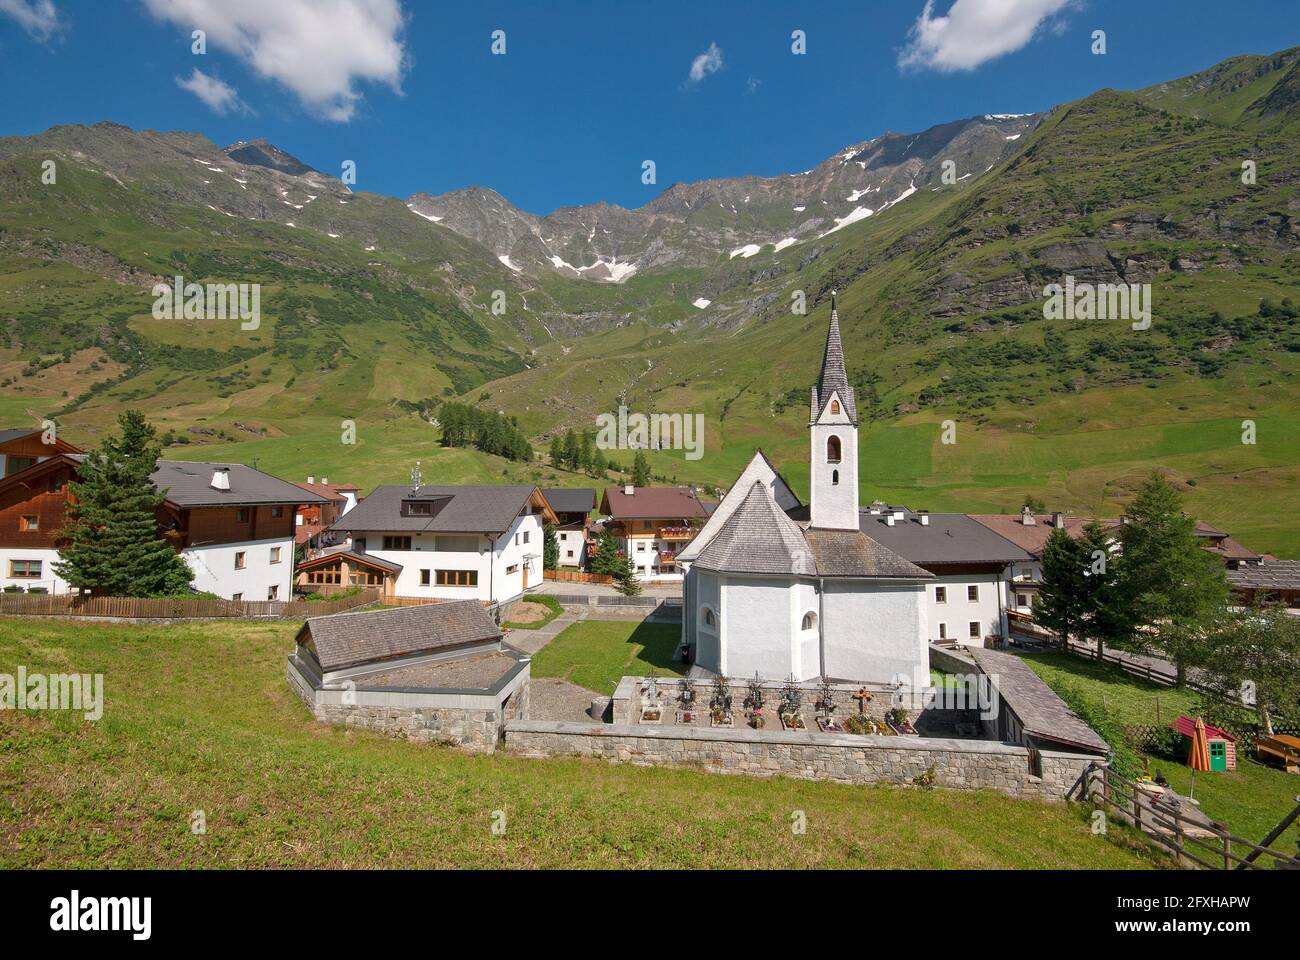 Église au village de Plan dans la vallée de Passiria (Passeiertal), Trentin-Haut-Adige, Italie Banque D'Images